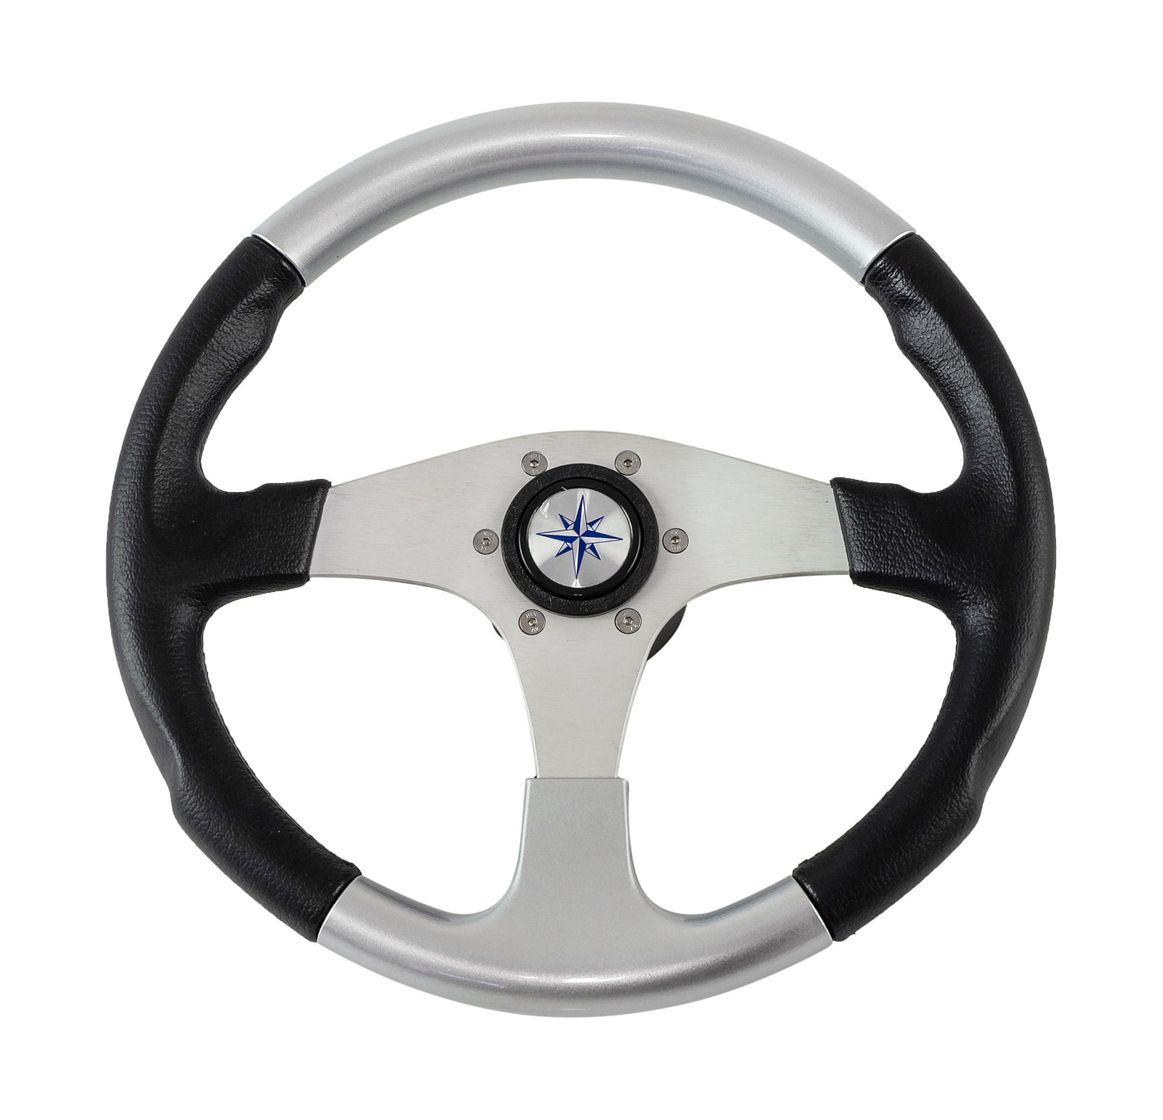 Рулевое колесо EVO MARINE 2 обод черносеребряный, спицы серебряные д. 355 мм купить c доставкой